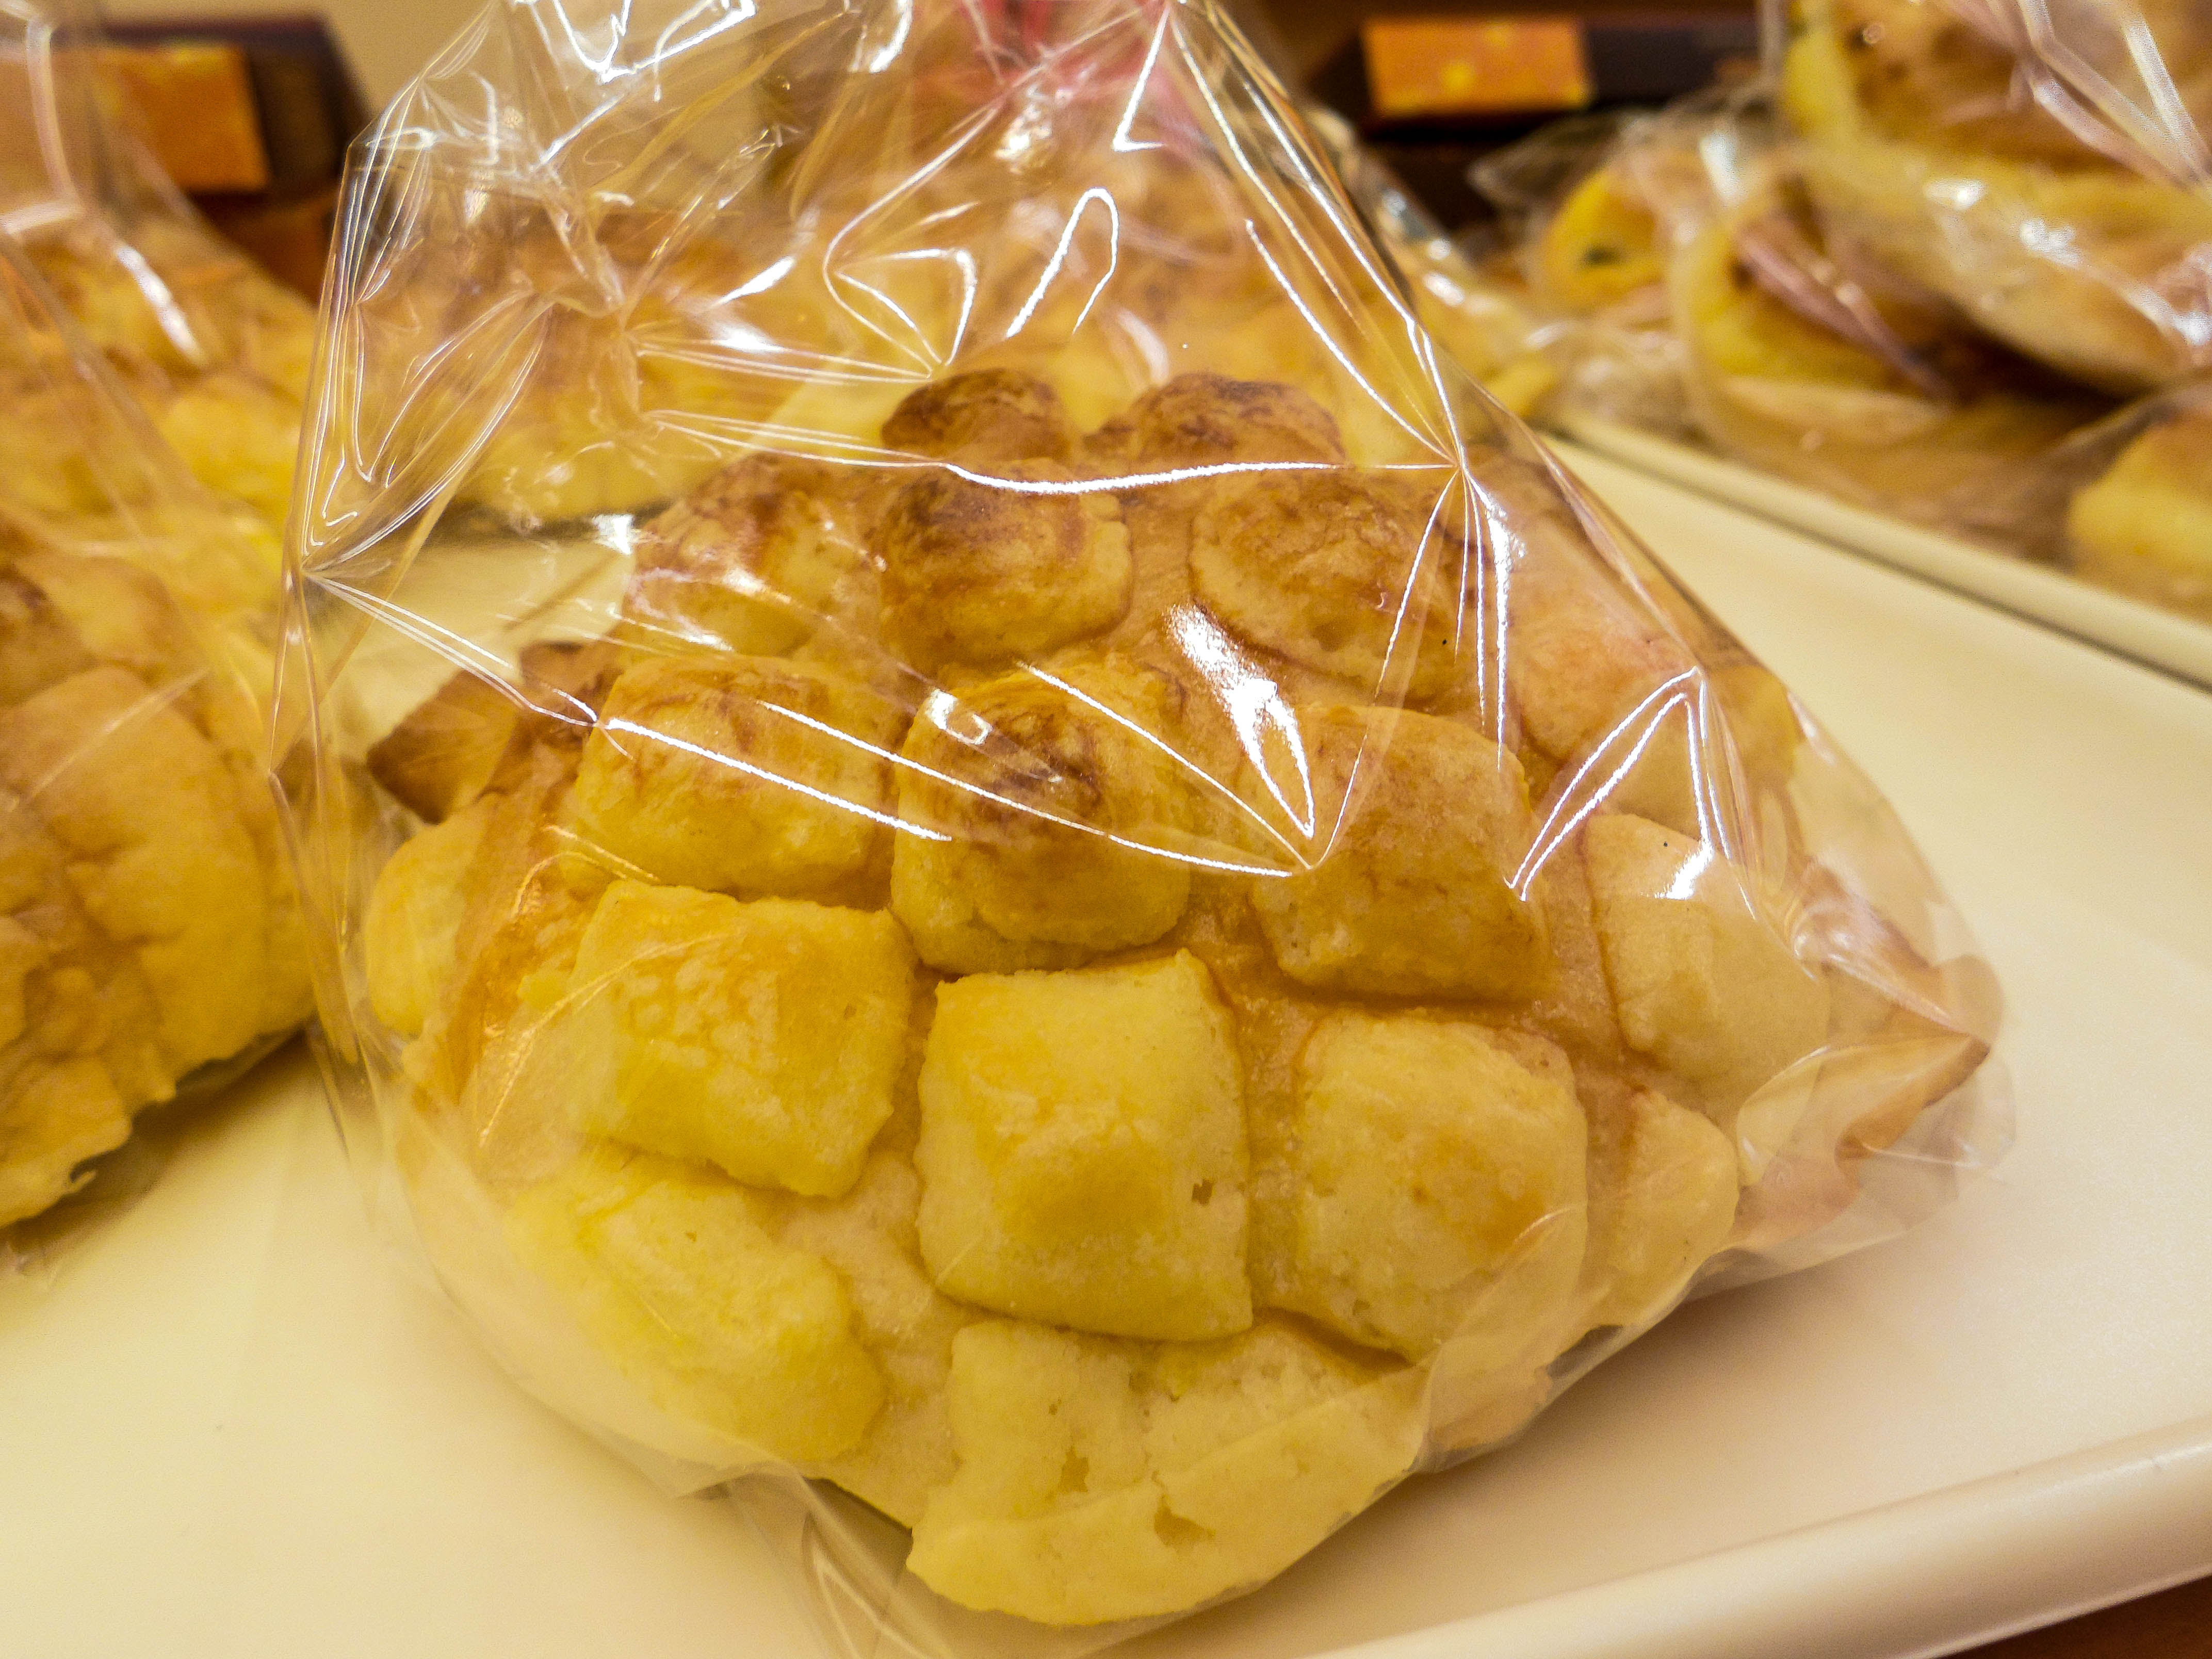 金波羅的糖酥較為厚實、濕潤，綿密的甜香乳化軟式的麵糰，兩者和諧搭配，呈現日常的美味